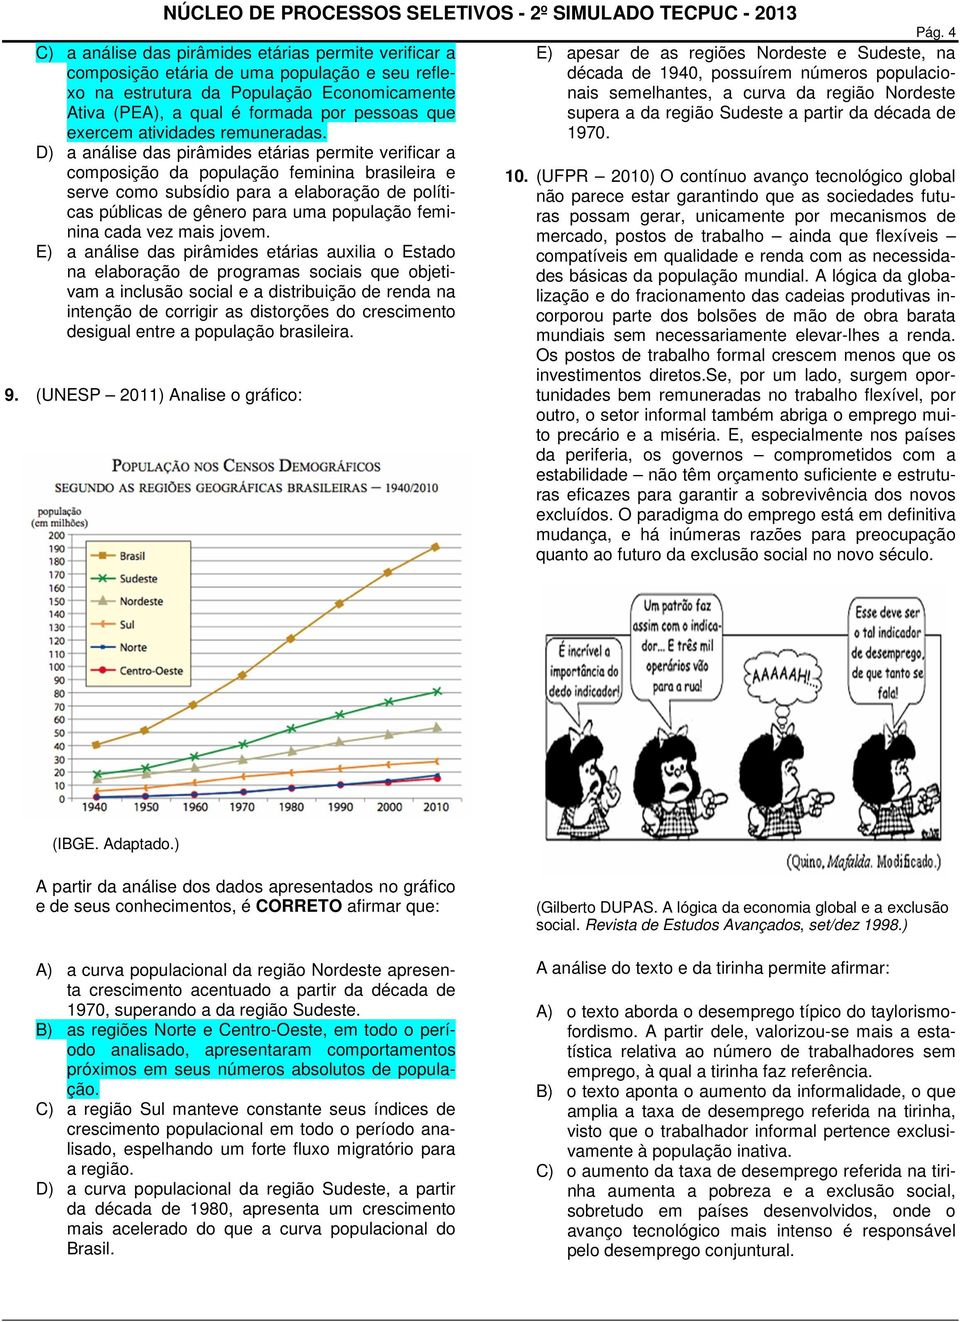 D) a análise das pirâmides etárias permite verificar a composição da população feminina brasileira e serve como subsídio para a elaboração de políticas públicas de gênero para uma população feminina